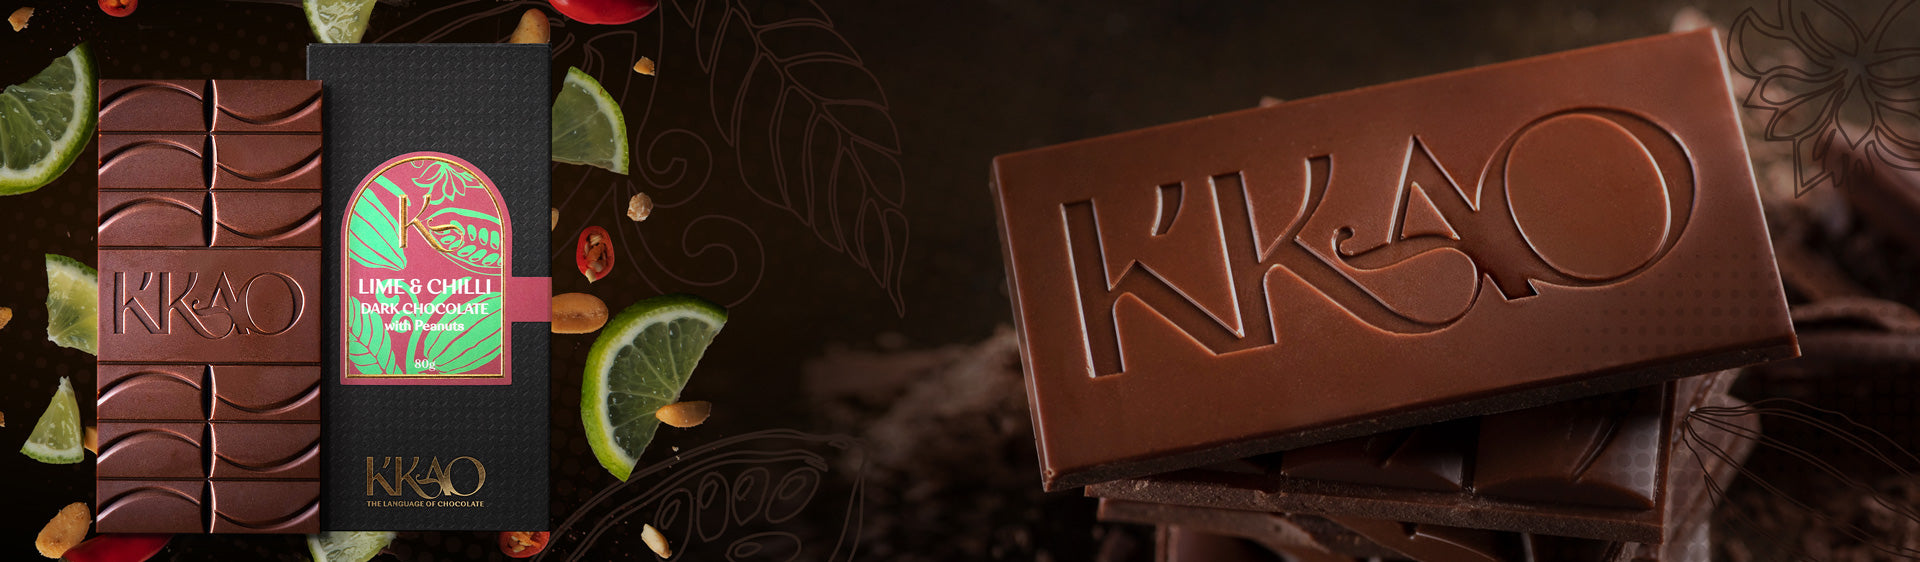 K'KAO Chocolate Bars